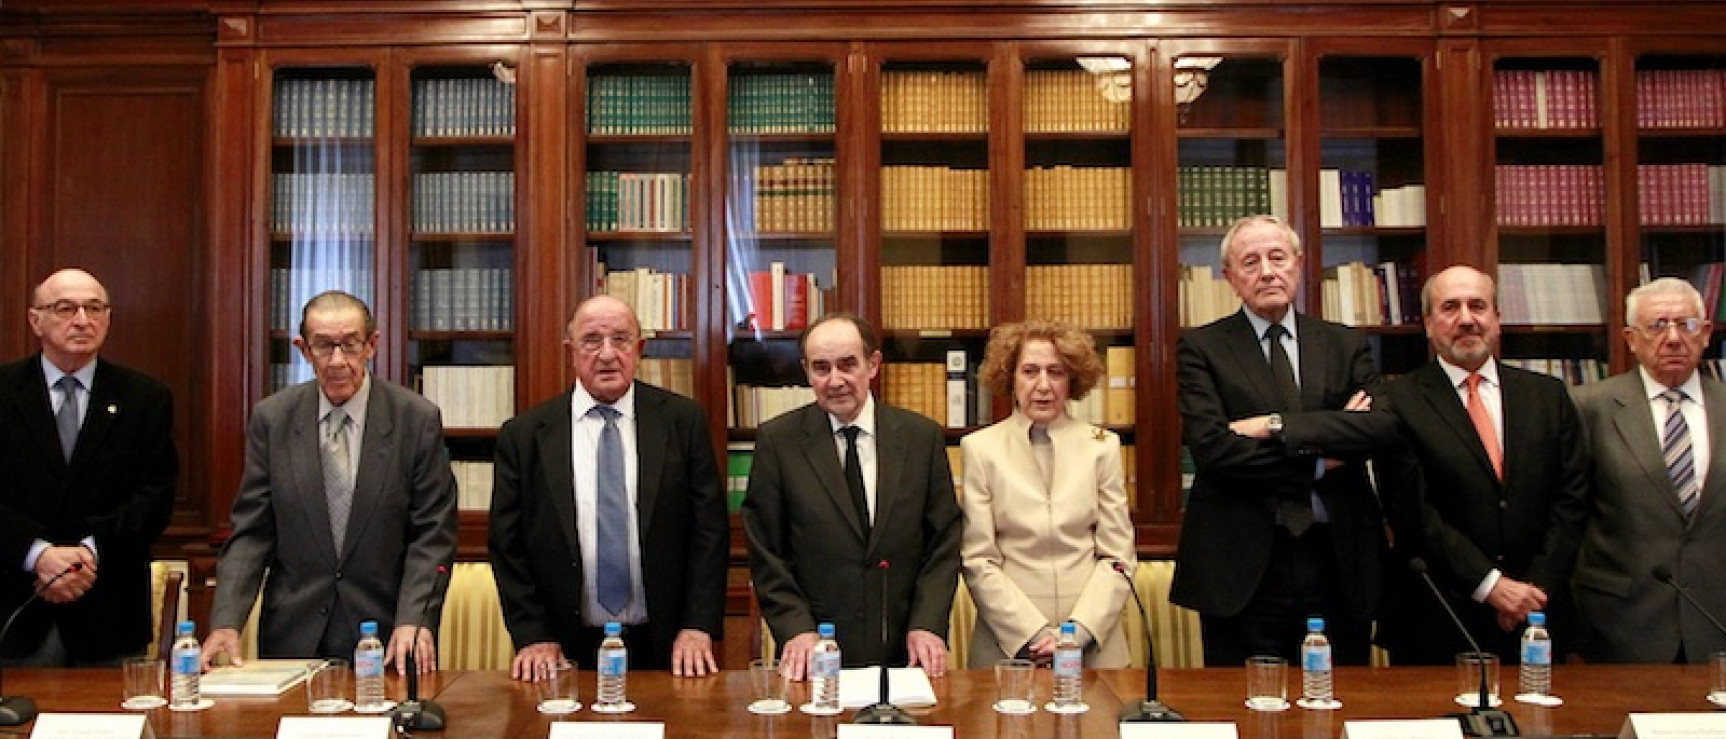 El presidente del Instituto de España, Joaquín Poch, junto con miembros de la Junta Rectora.